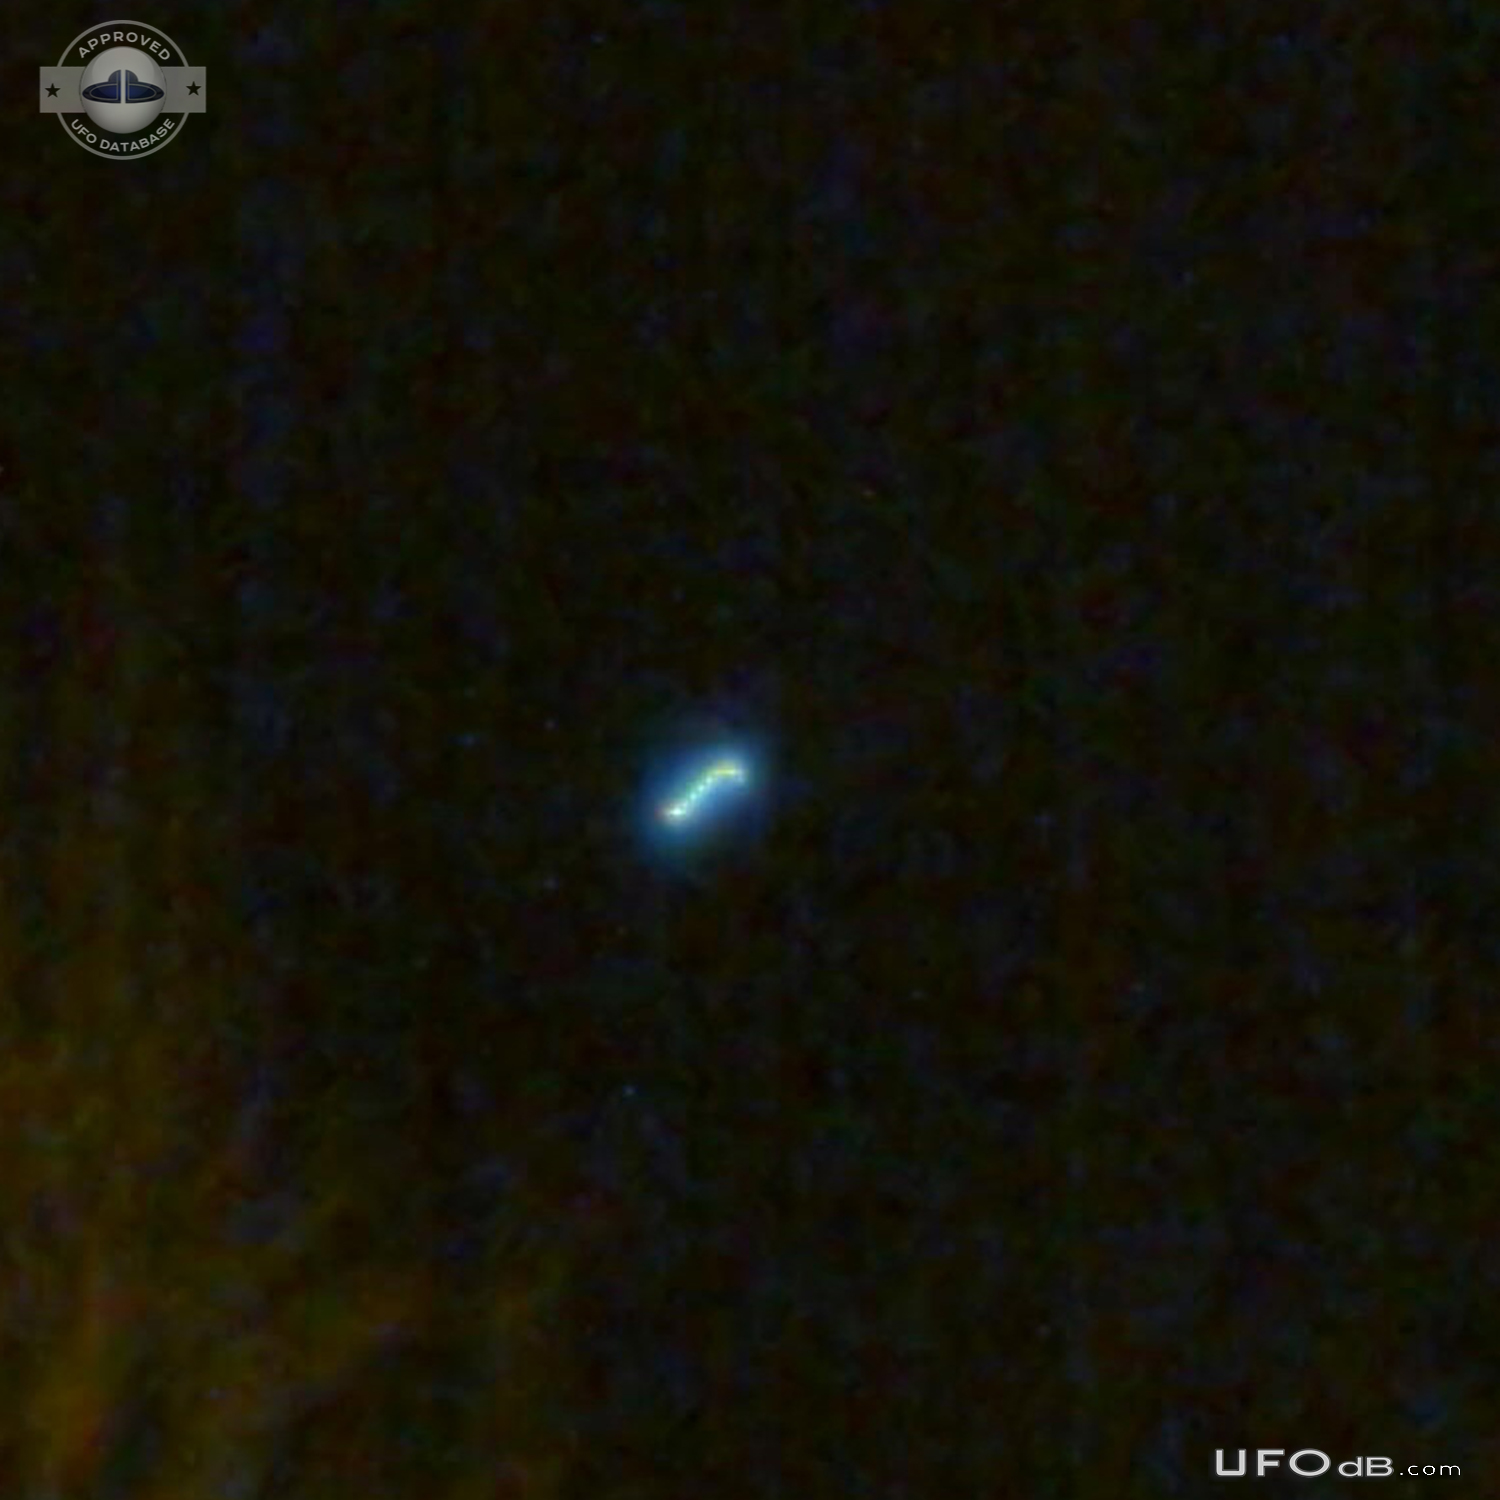 Perfect circle UFO with blue light in Satu Mare Romania in 2010 UFO Picture #841-2